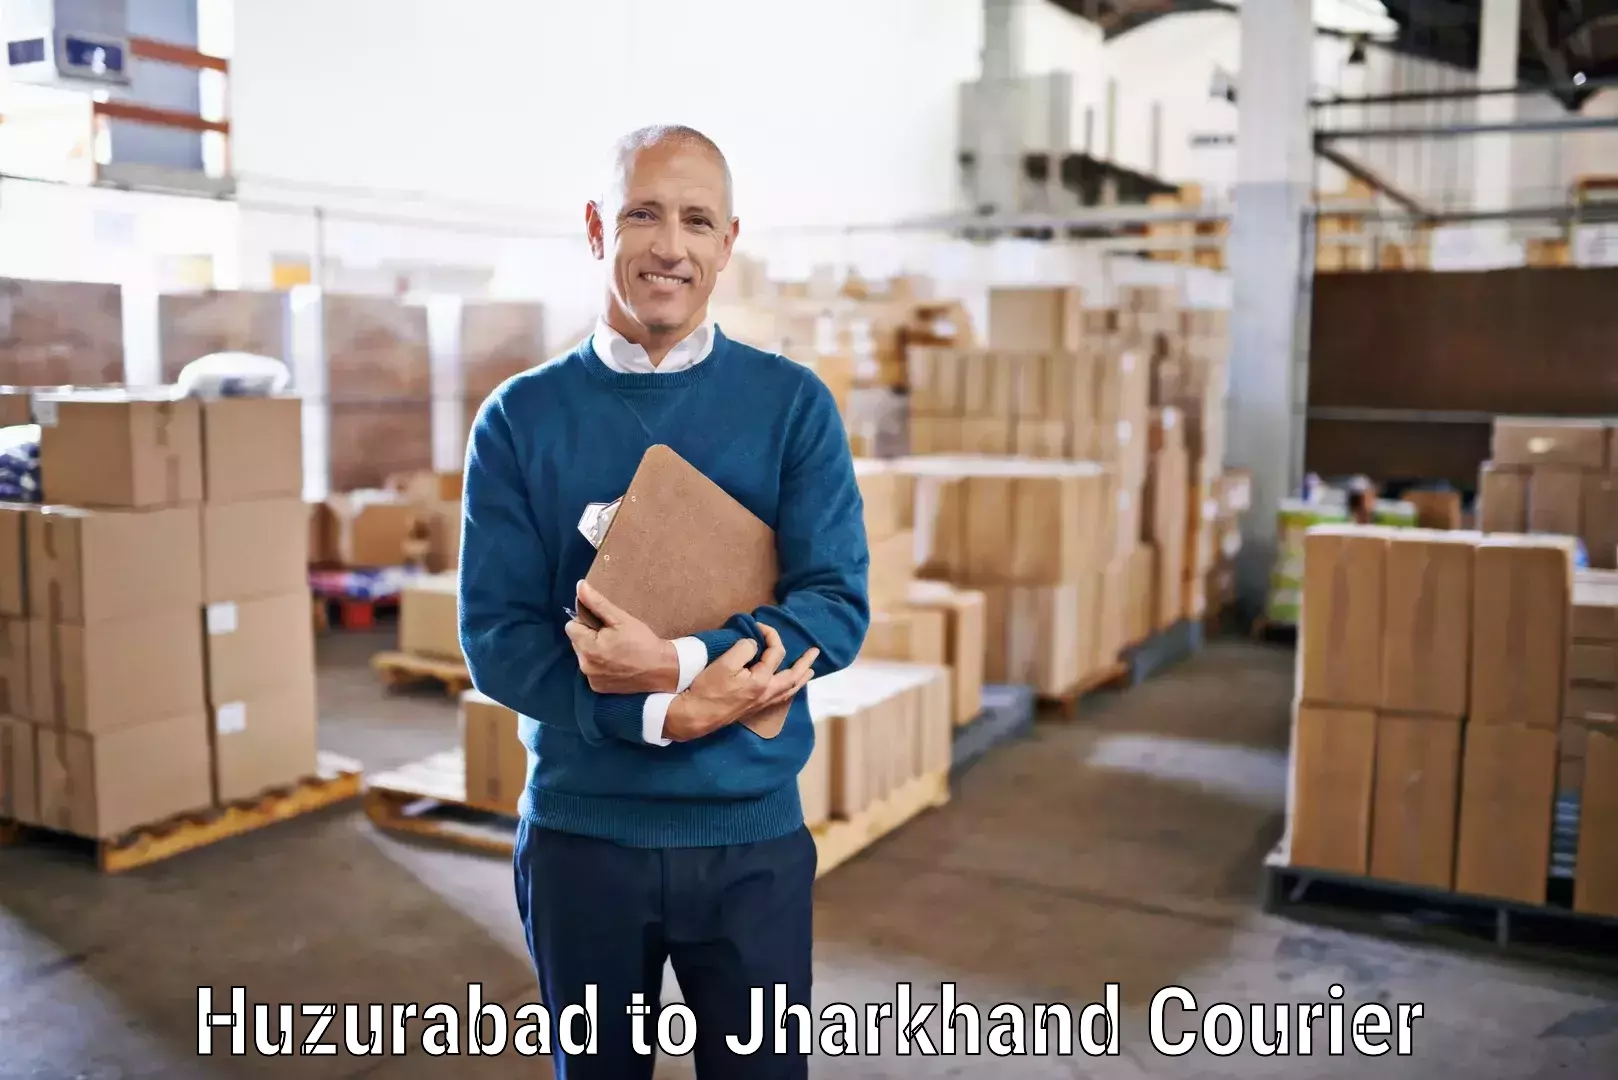 Affordable parcel service Huzurabad to Poreyahat